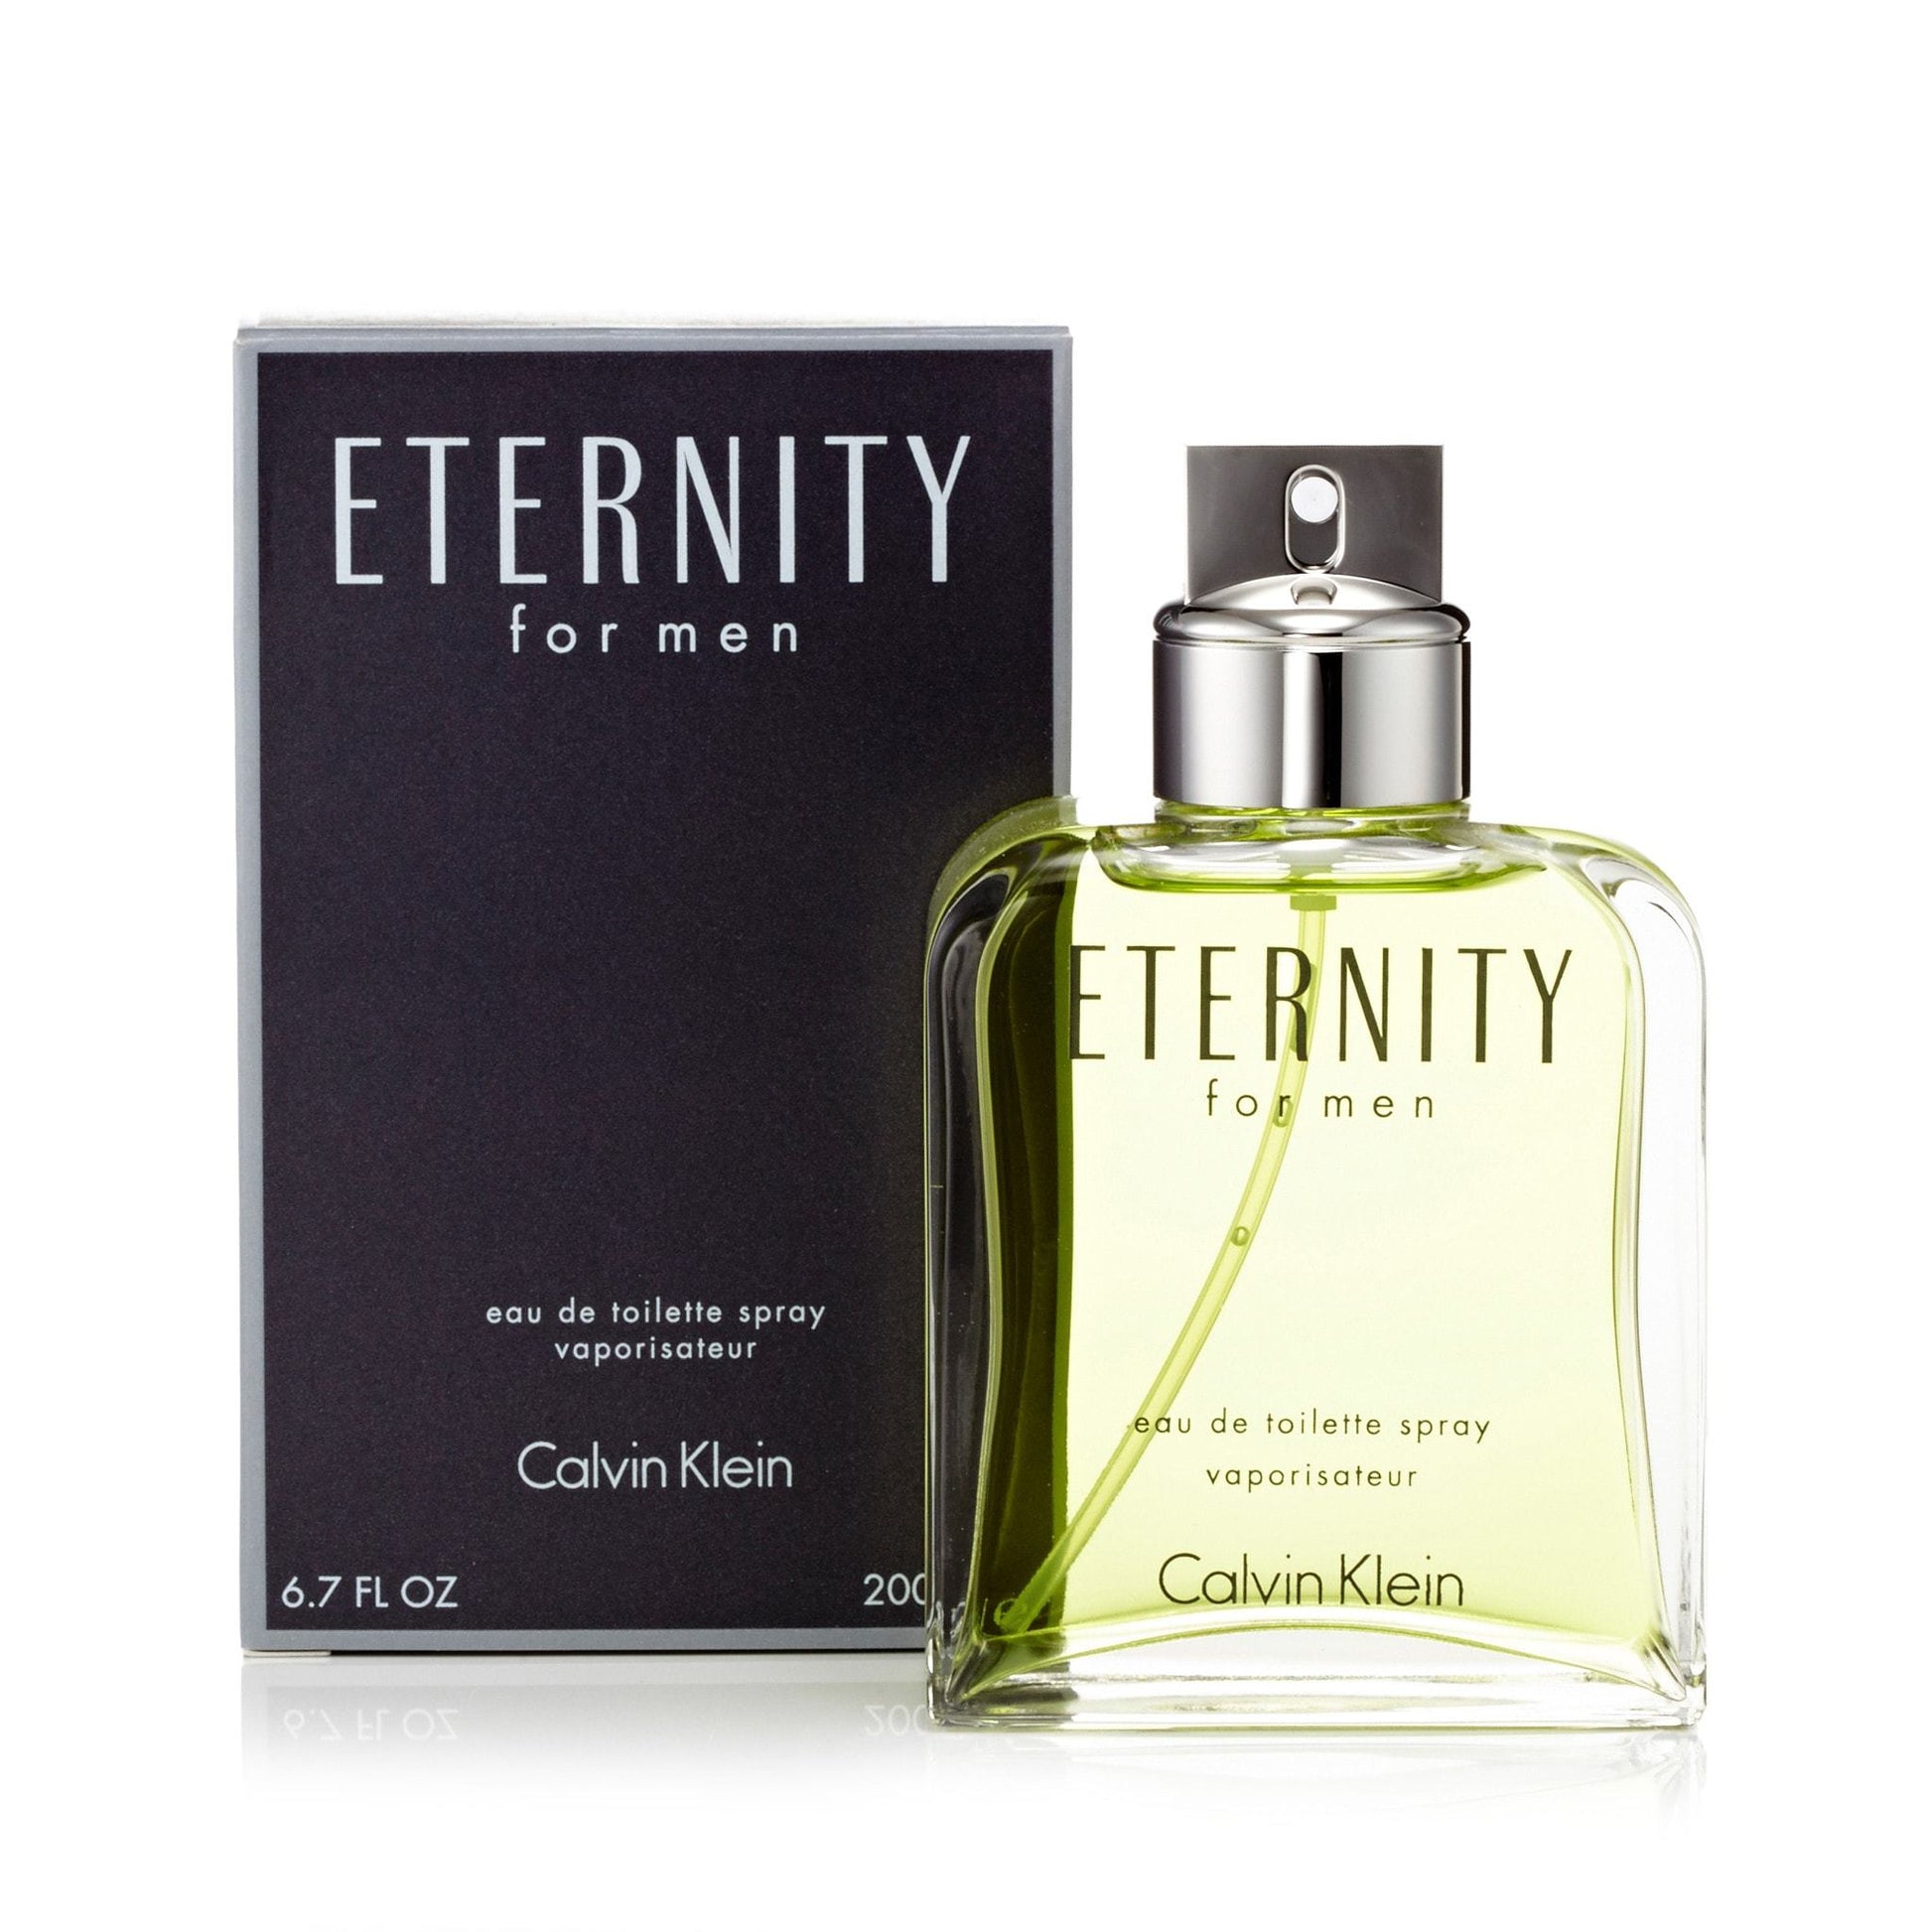 Eternity Eau de Toilette Spray for Men by Calvin Klein, Product image 1